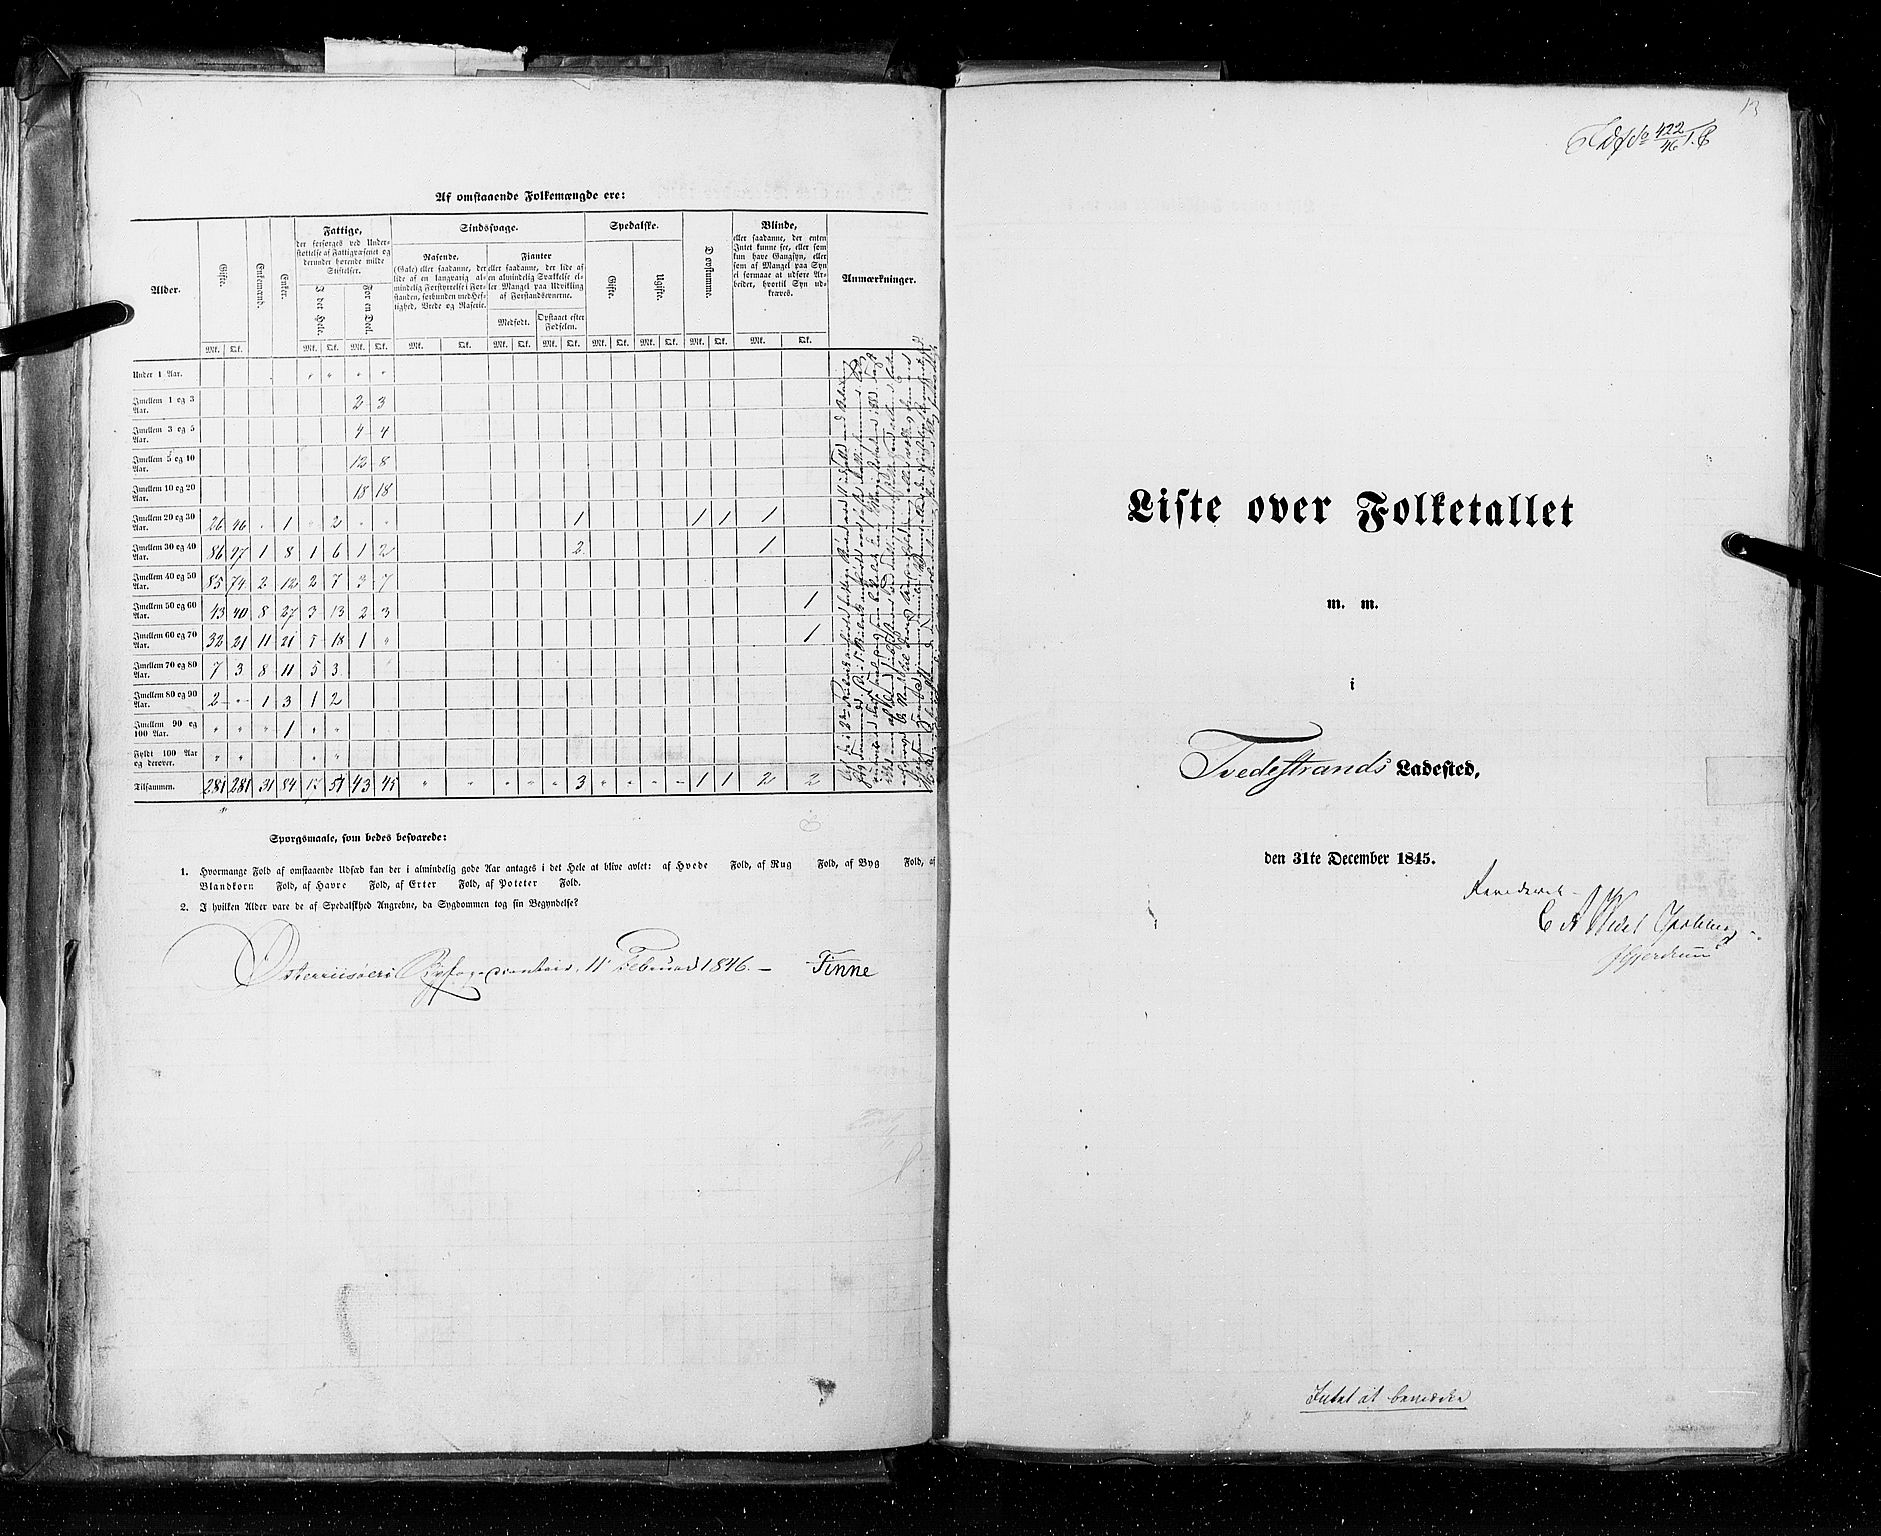 RA, Folketellingen 1845, bind 11: Kjøp- og ladesteder, 1845, s. 13